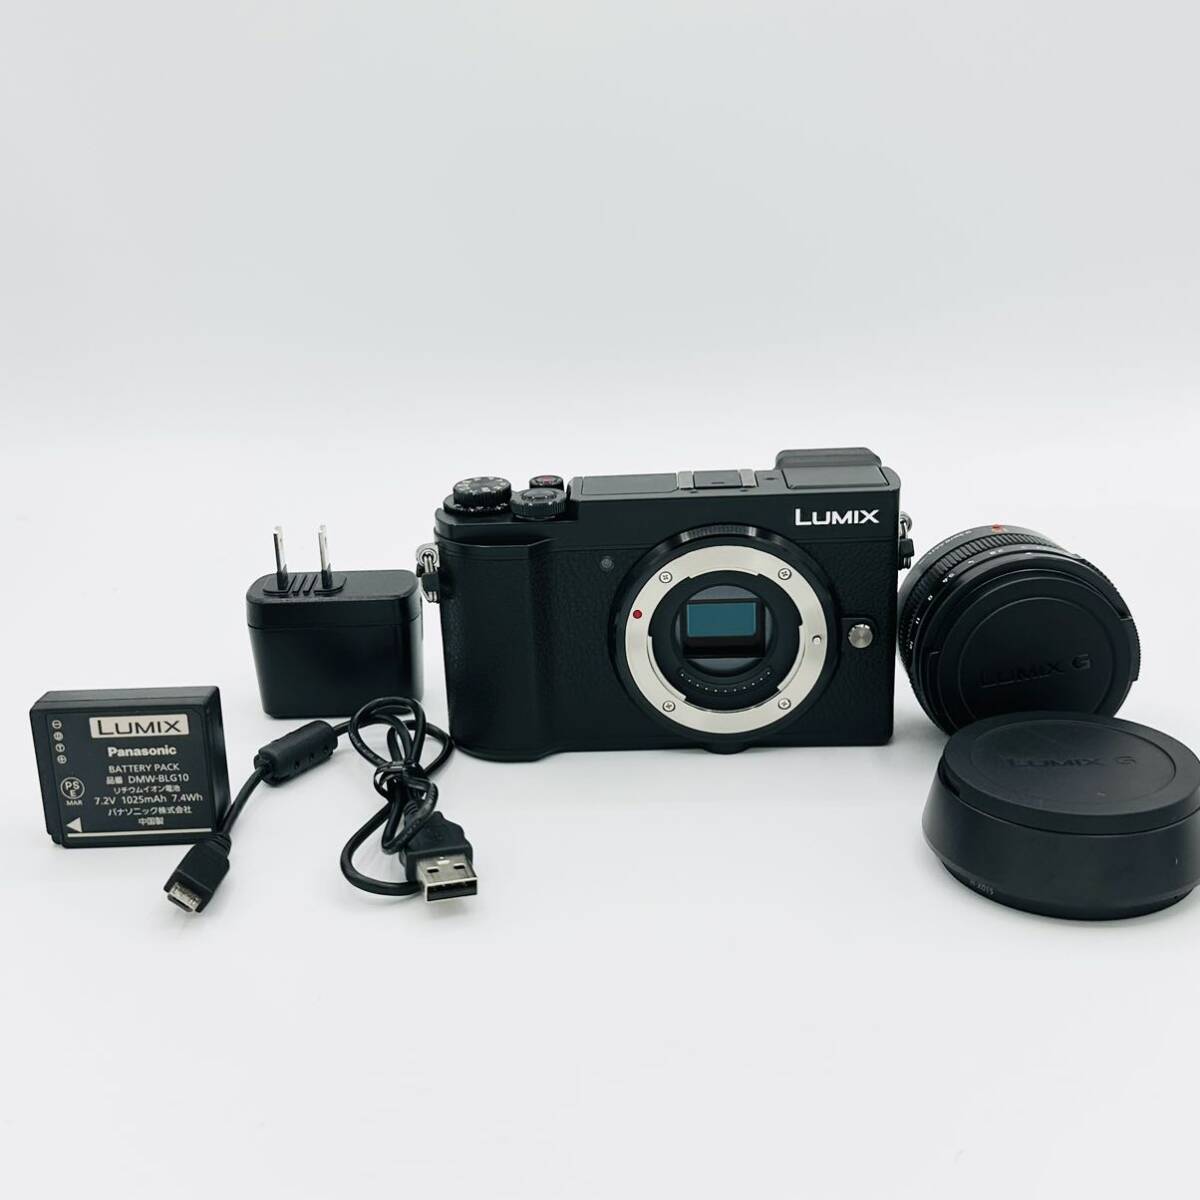 [ почти новый 1144 раз ] Panasonic беззеркальный однообъективный камера Lumix GX7MK3 одиночный подпалина пункт Leica DG линзы комплект черный DC-GX7MK3L-K